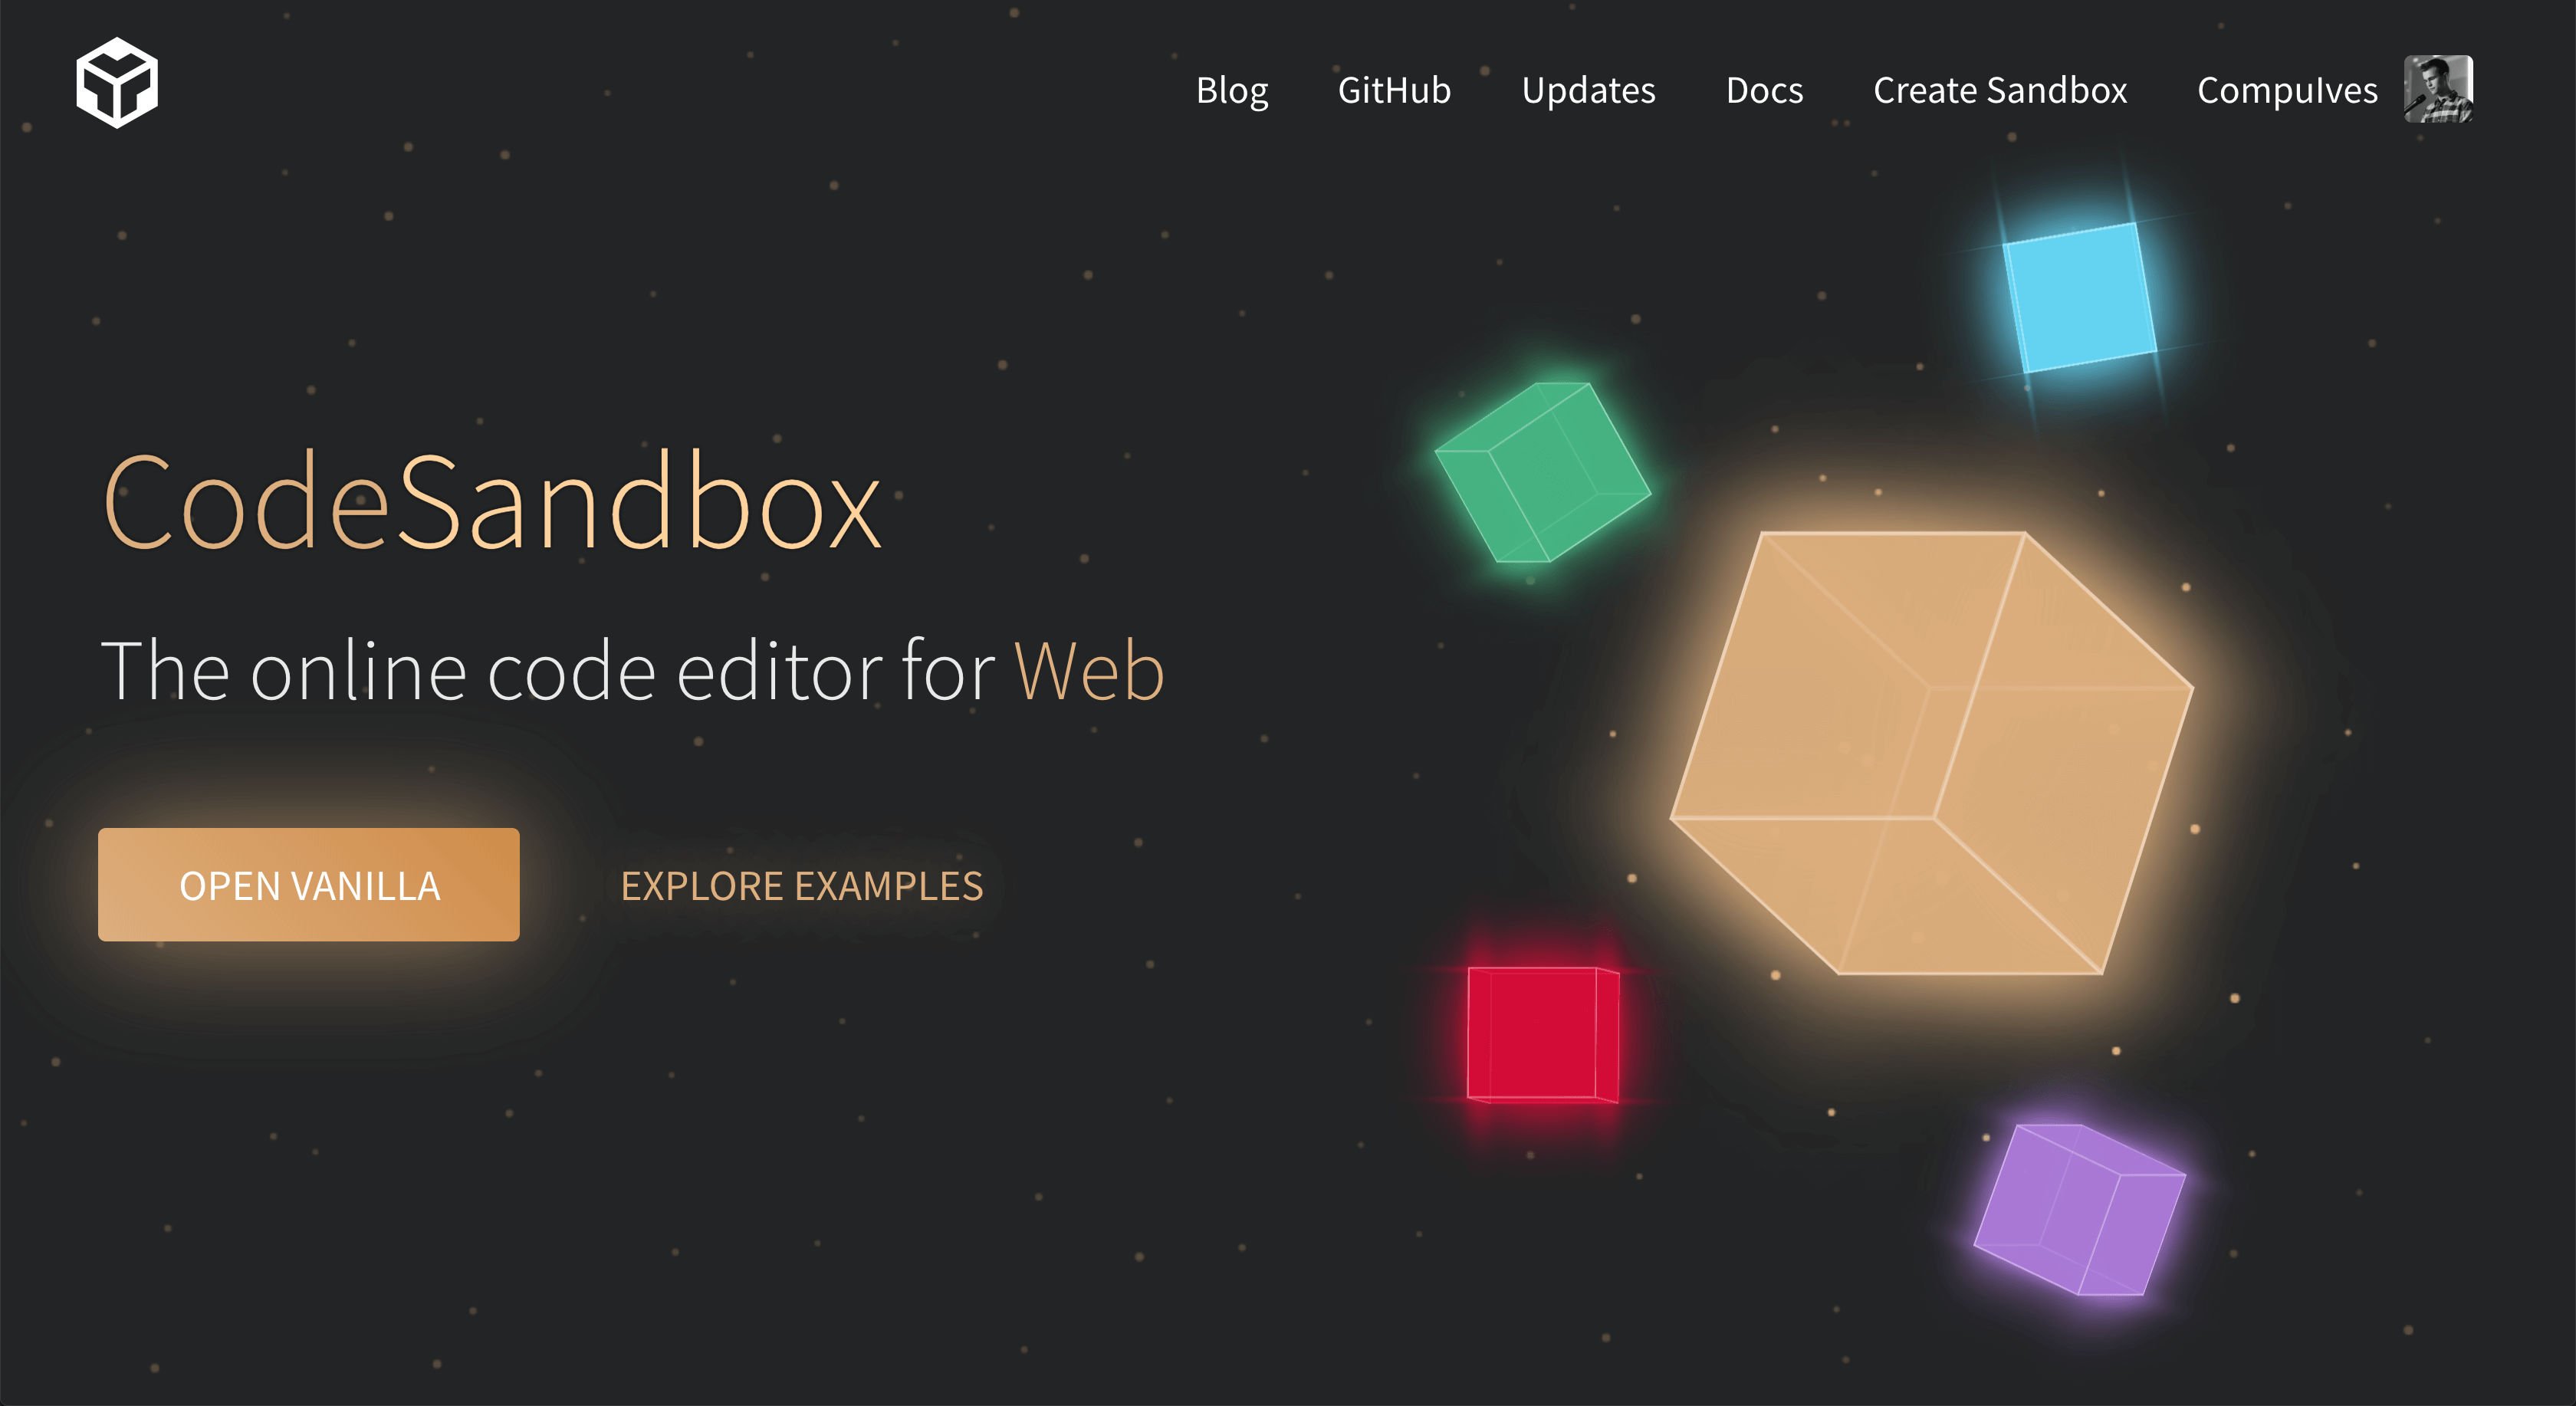 site - Codesandbox